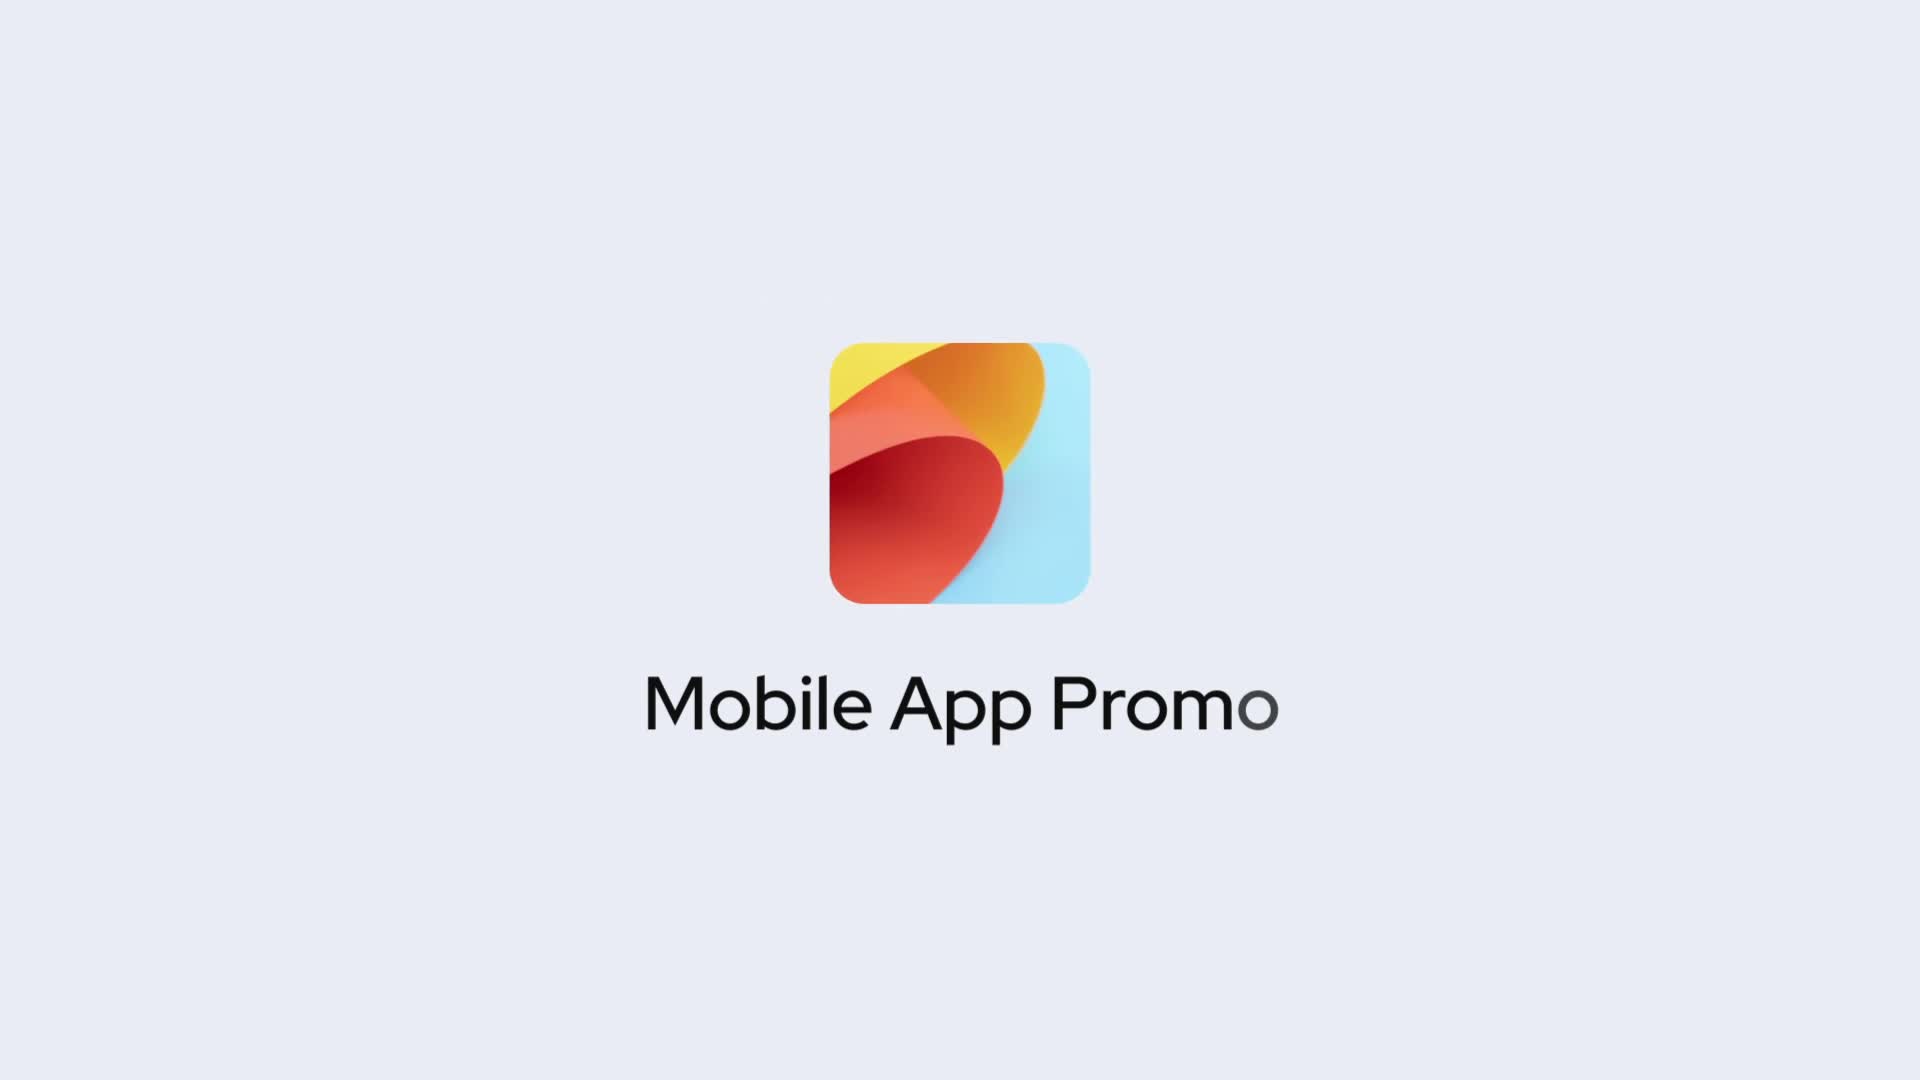 Clean Mobile App Promo for Premiere Pro Videohive 33651785 Premiere Pro Image 1